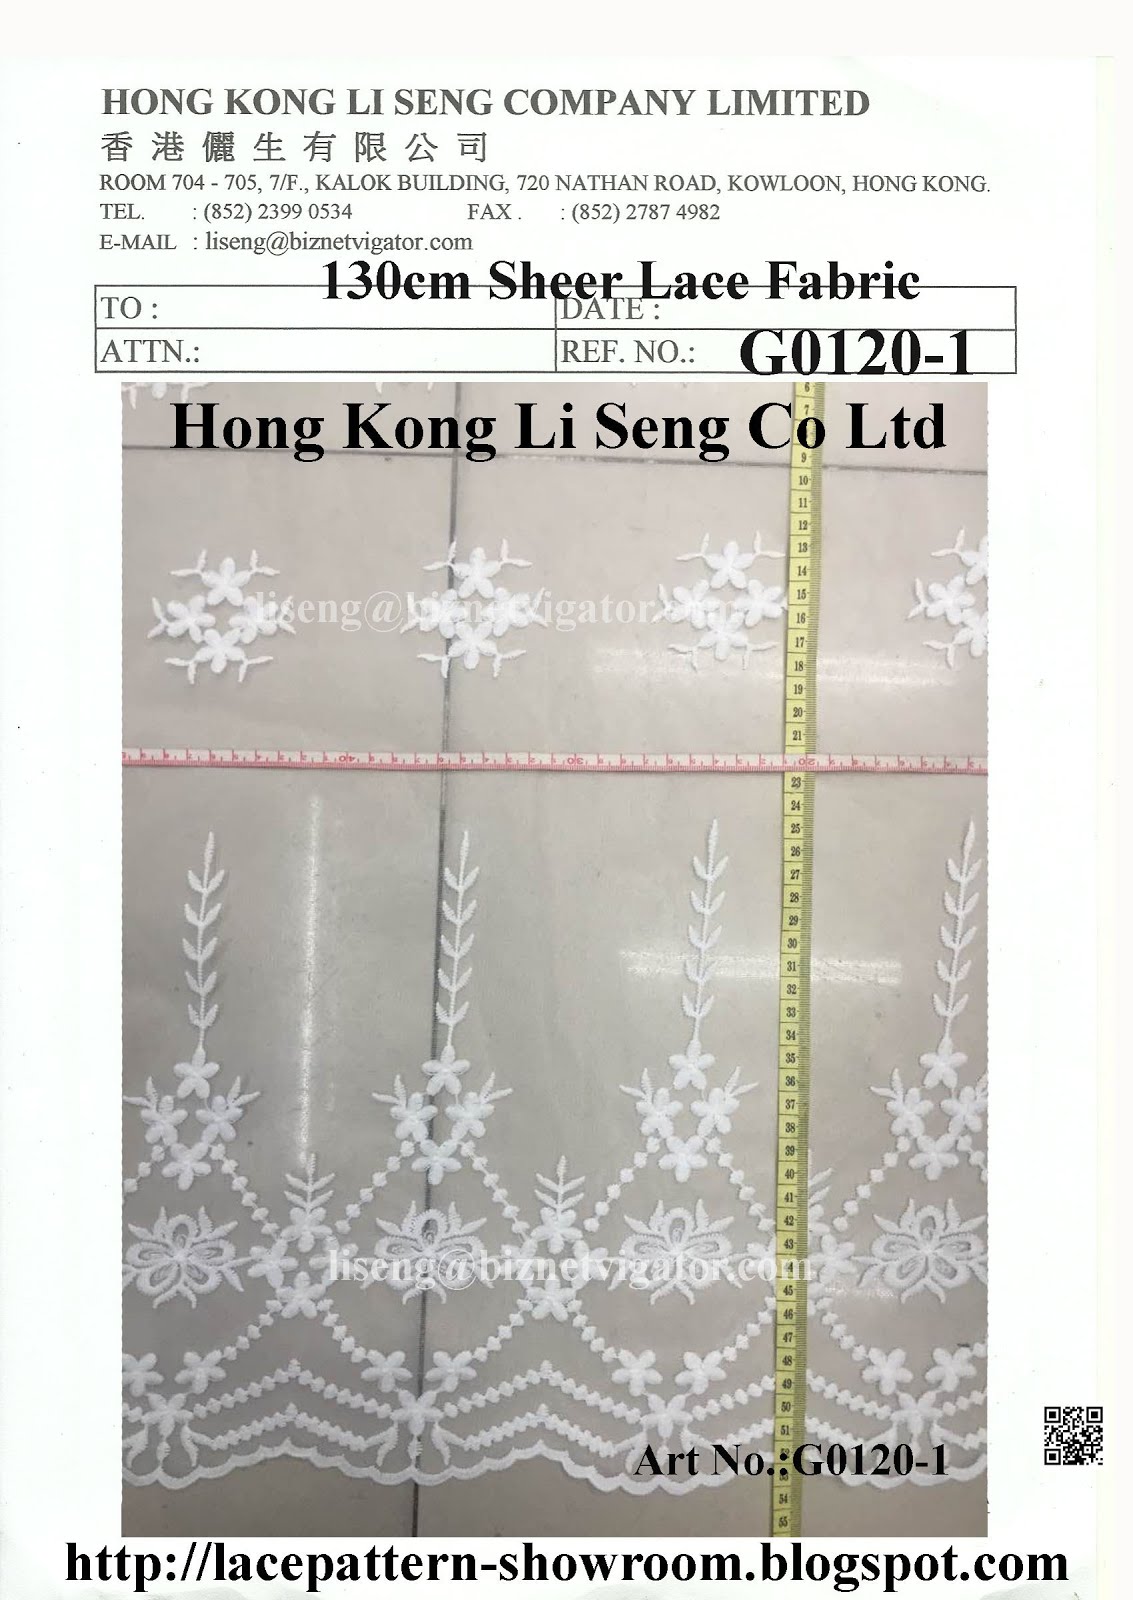 Hong Kong Li Seng Co Ltd New Lace Trims Pattern and Lace